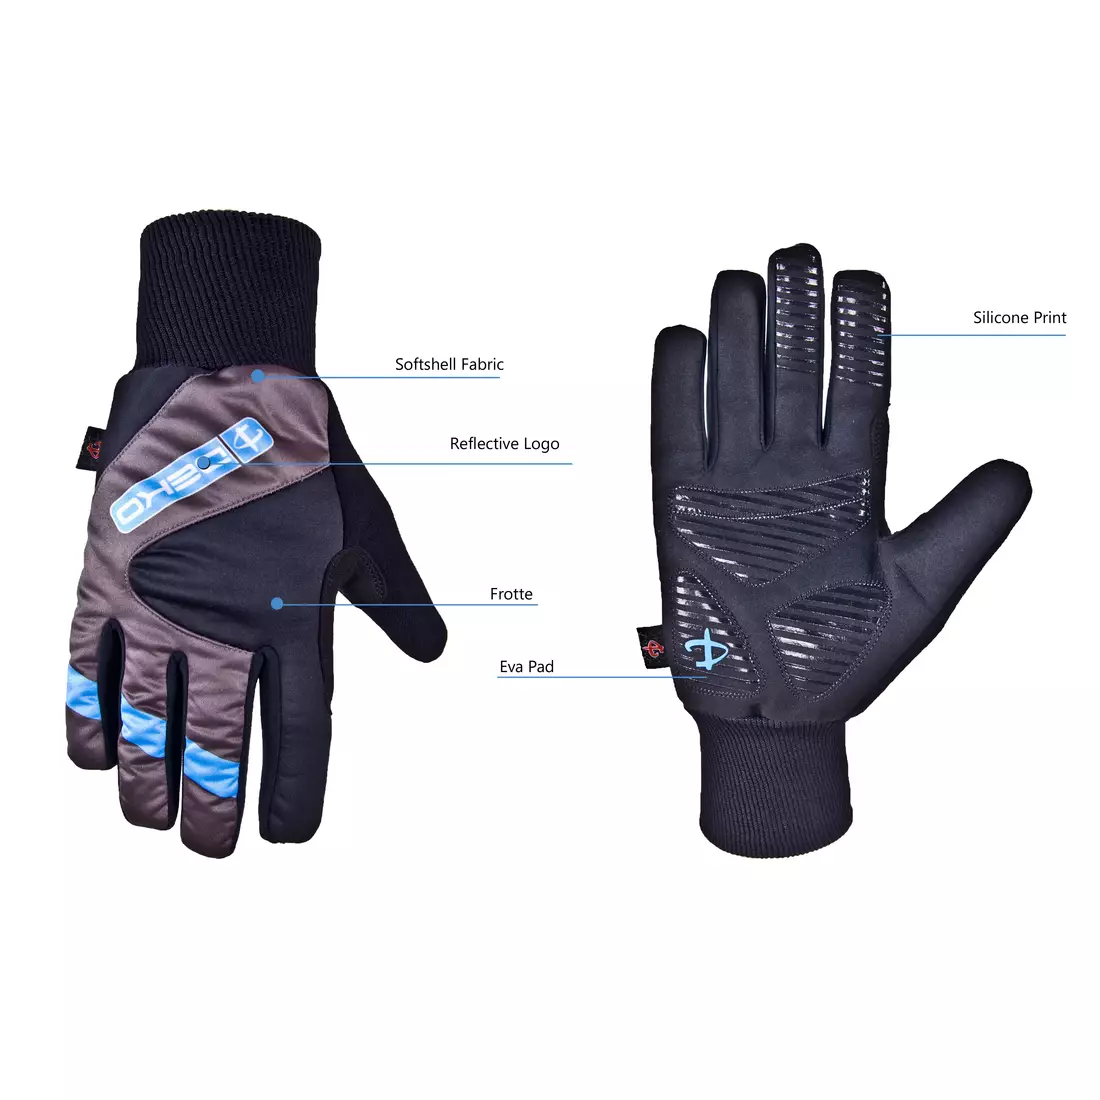 Mănuși de iarnă DEKO RAST pentru ciclism negre și albastre DKW-910